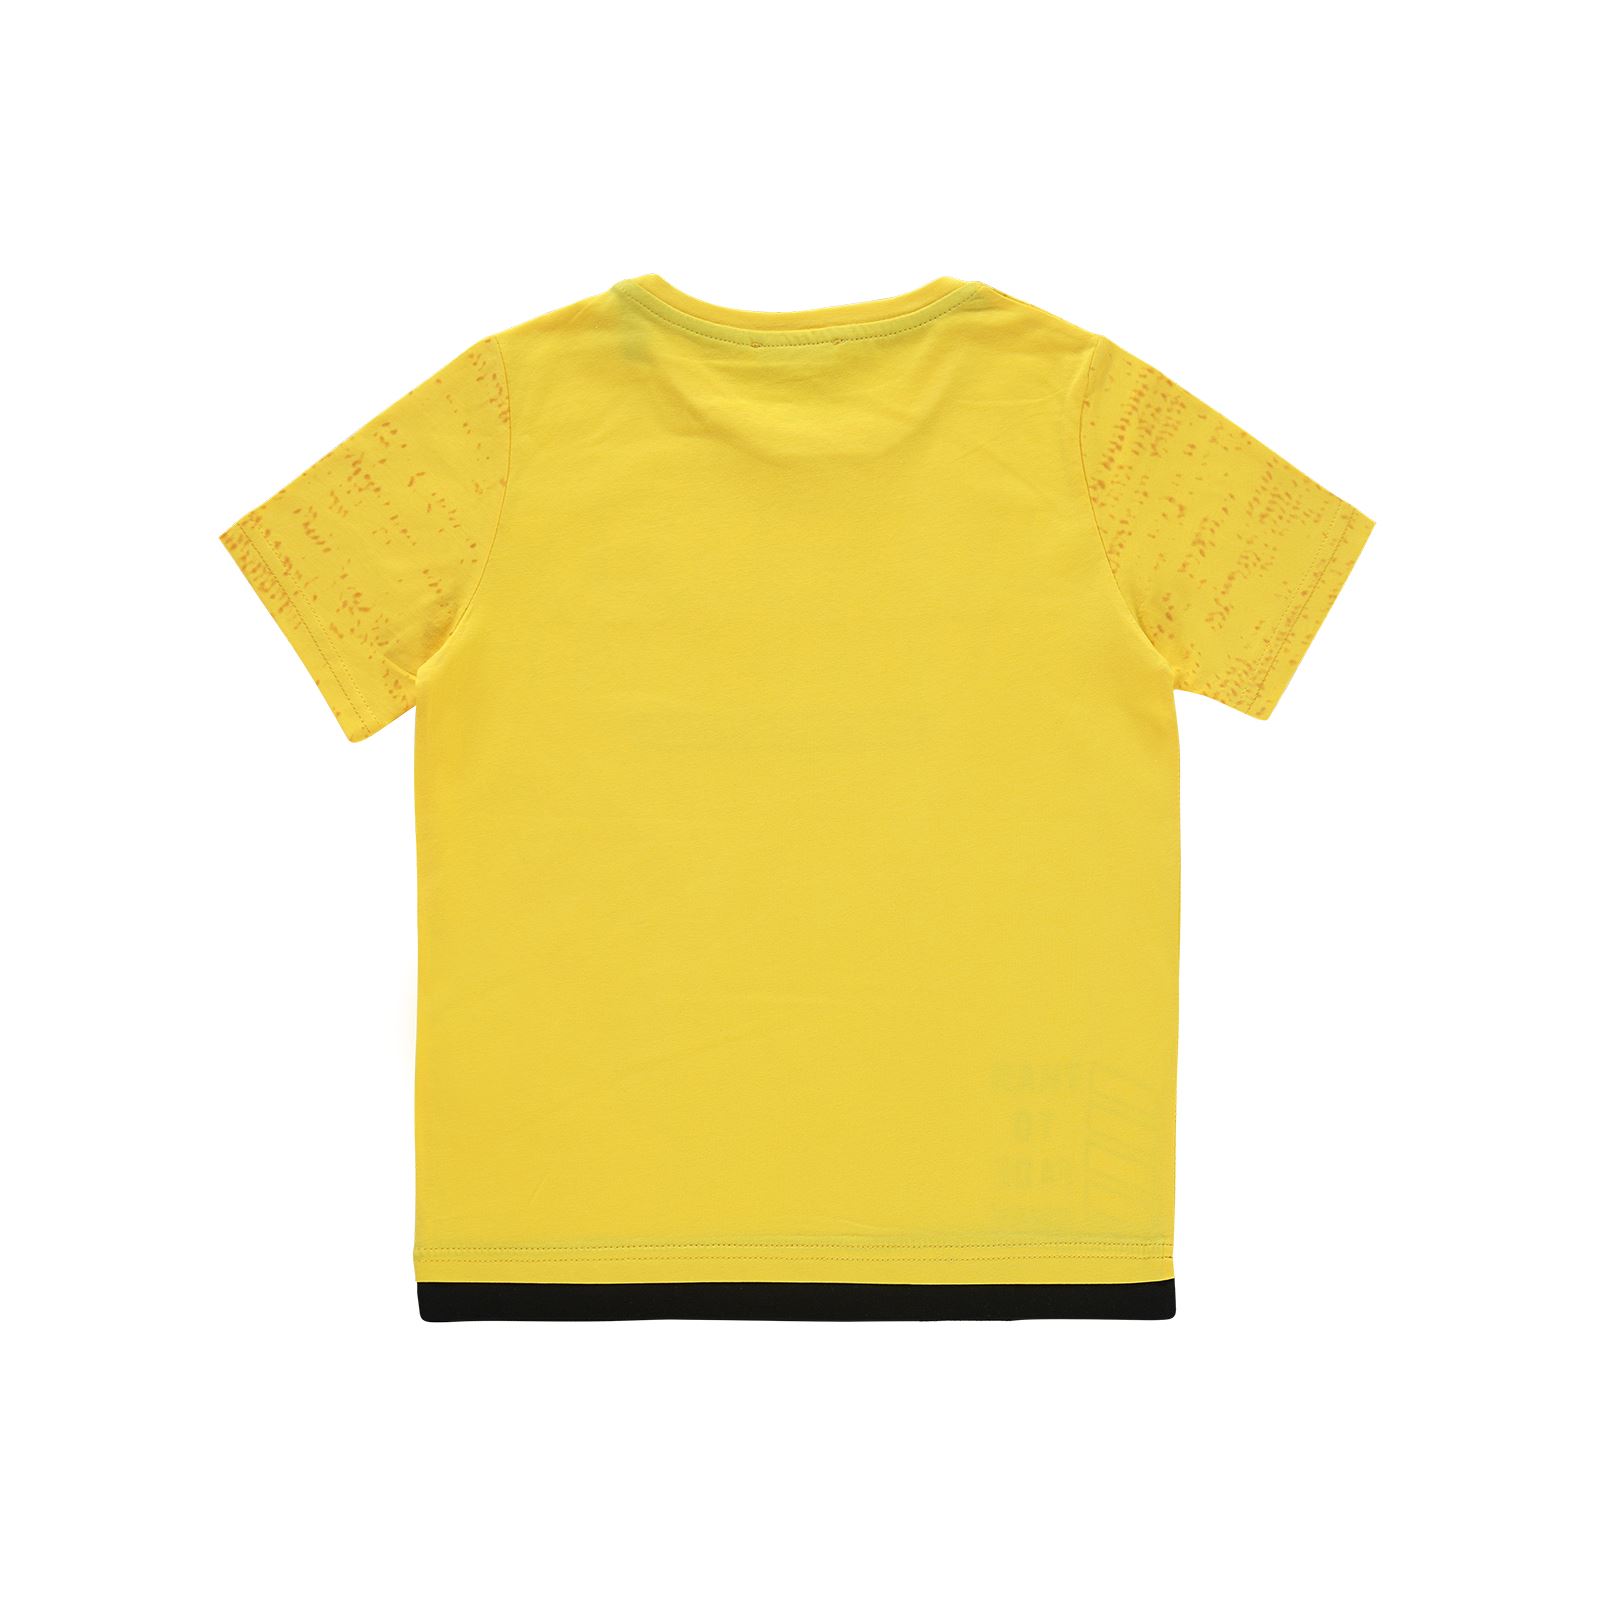 Junion Erkek Çocuk Tişört 8-14 Yaş Sarı